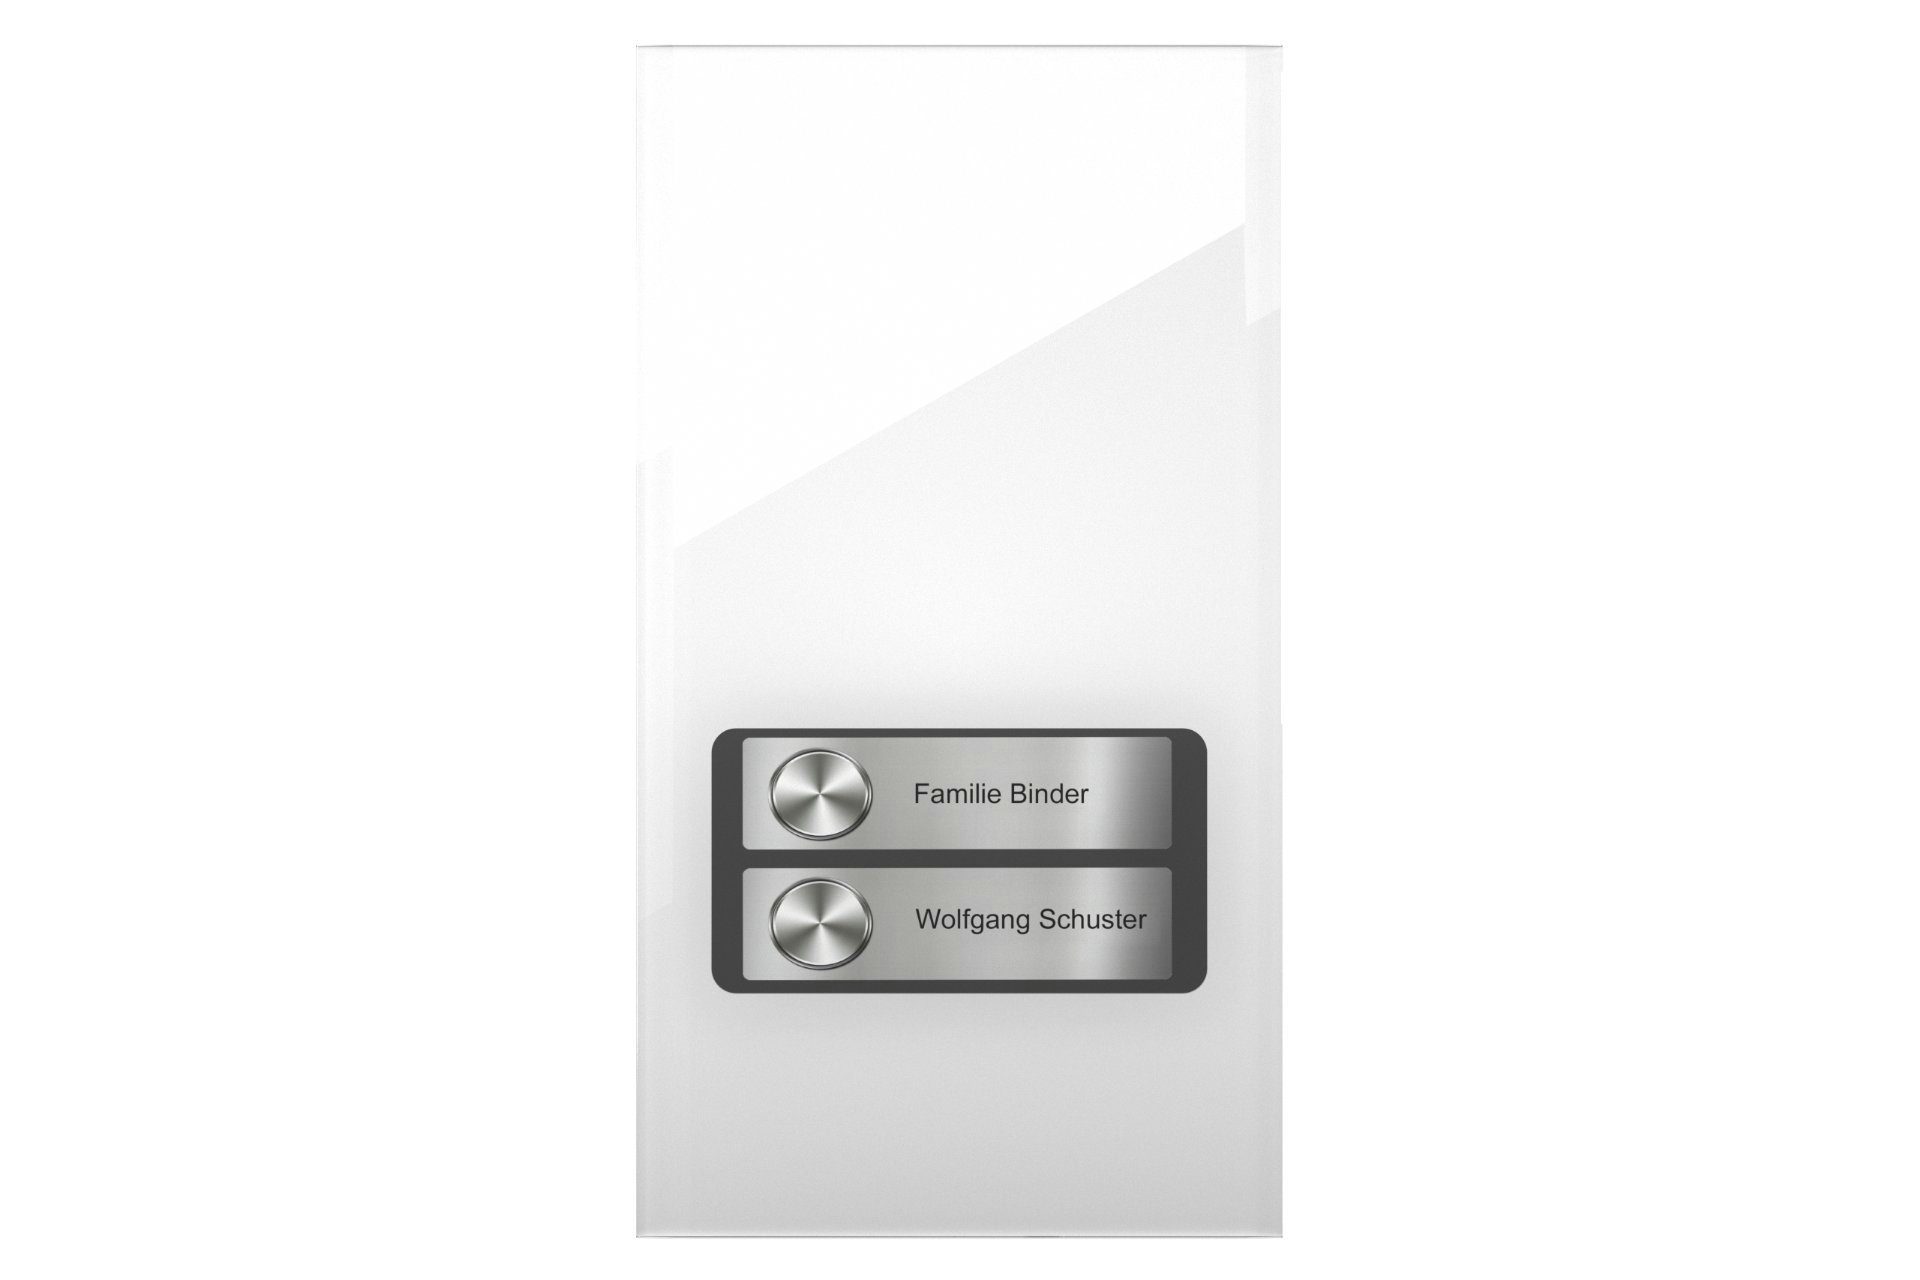 DoorLine Pro Exclusive Smart Home Klingeltaster Zutrittskontrolle über (direkt 1-4 Türklingel Rufnummern, Telefon, wahlweise Weiß PIN-Code) 2 an jeweils auf´s